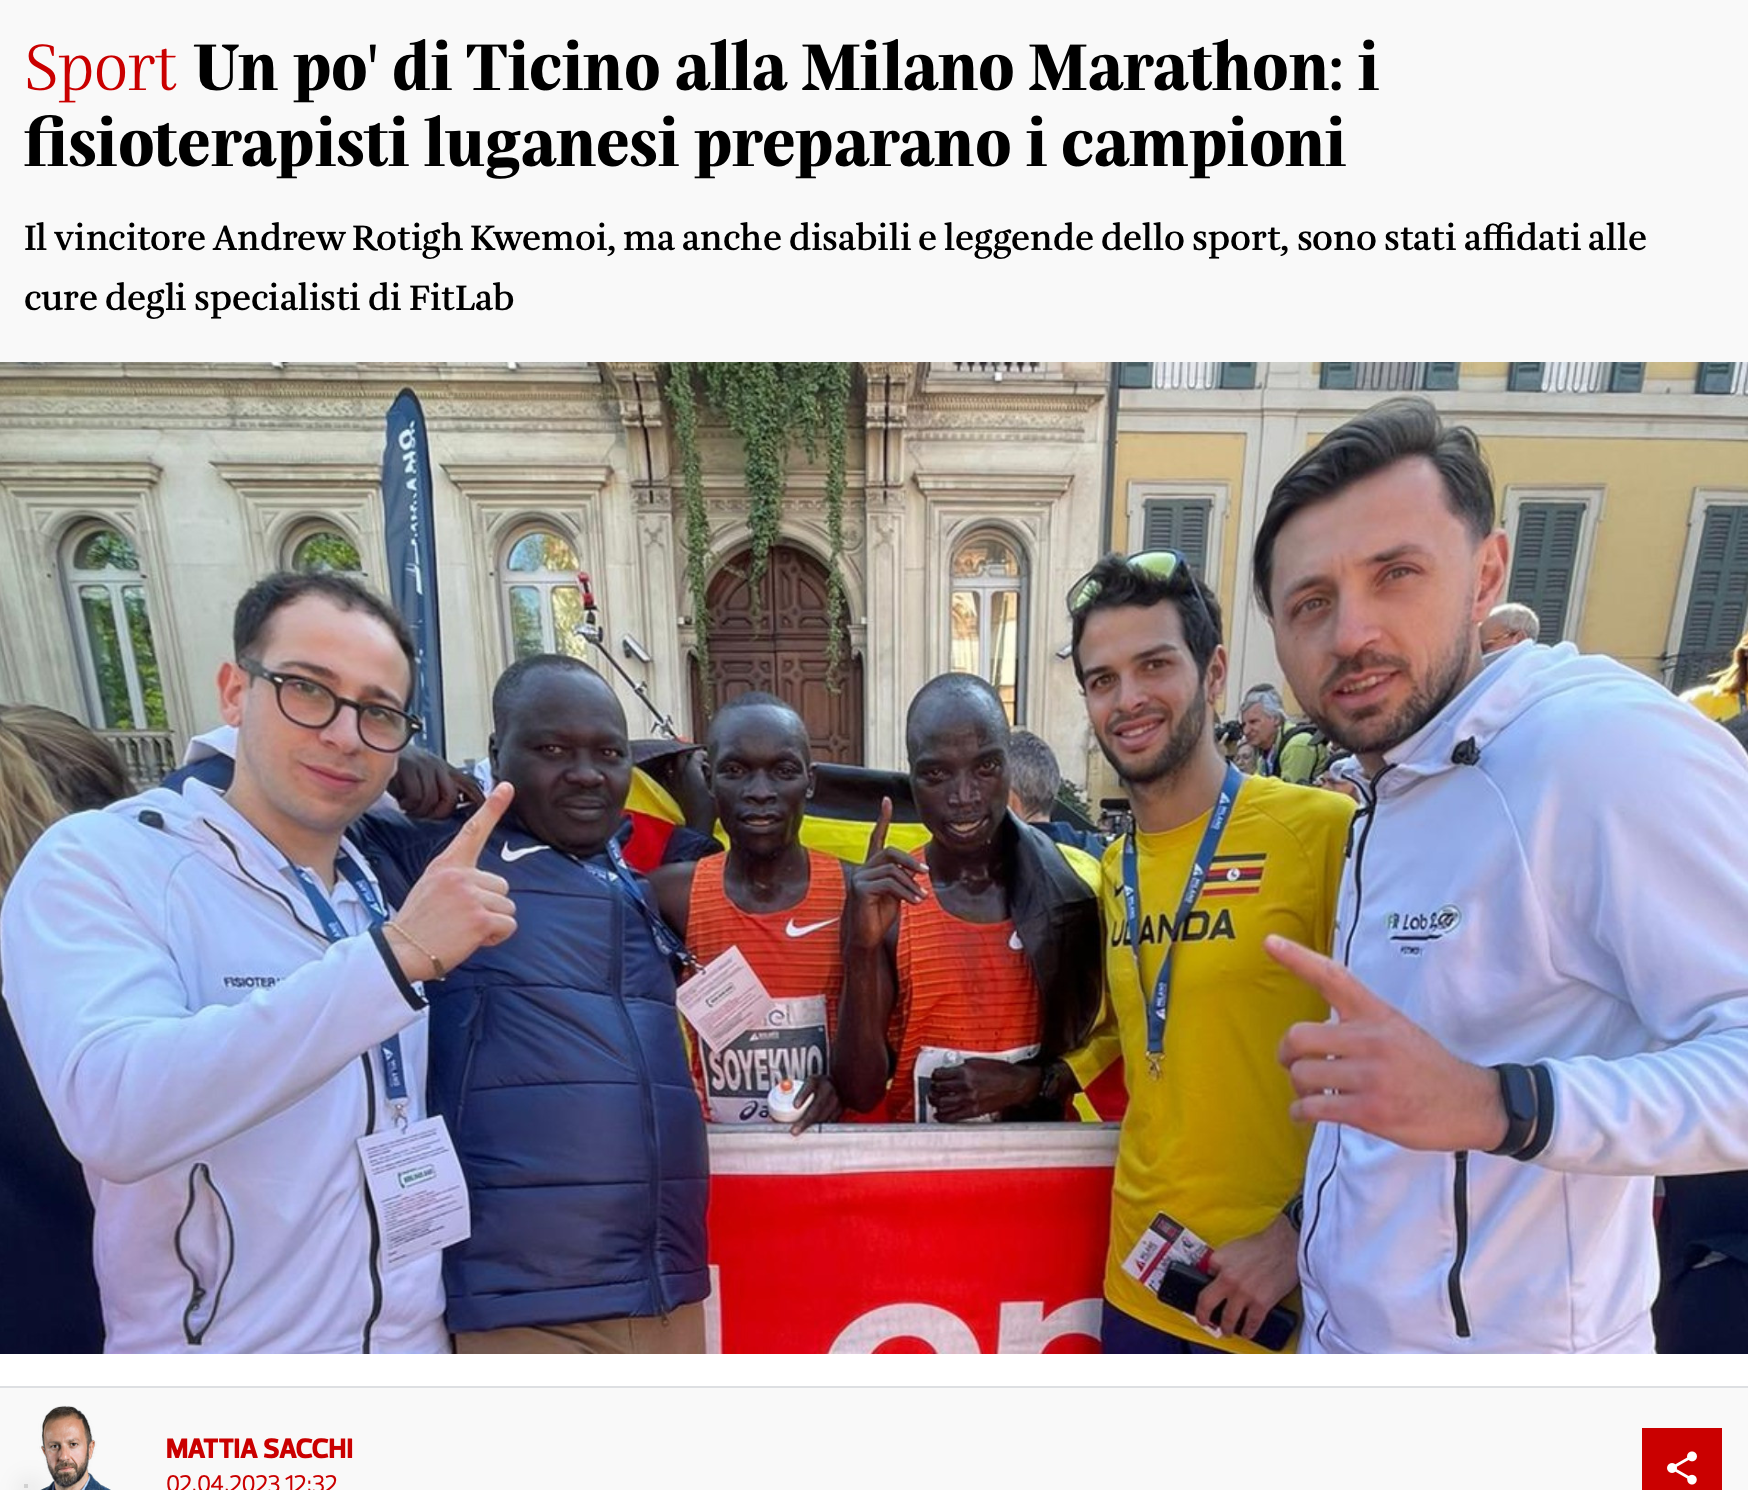 Un po' di Ticino alla Milano Marathon: i fisioterapisti luganesi preparano i campioni